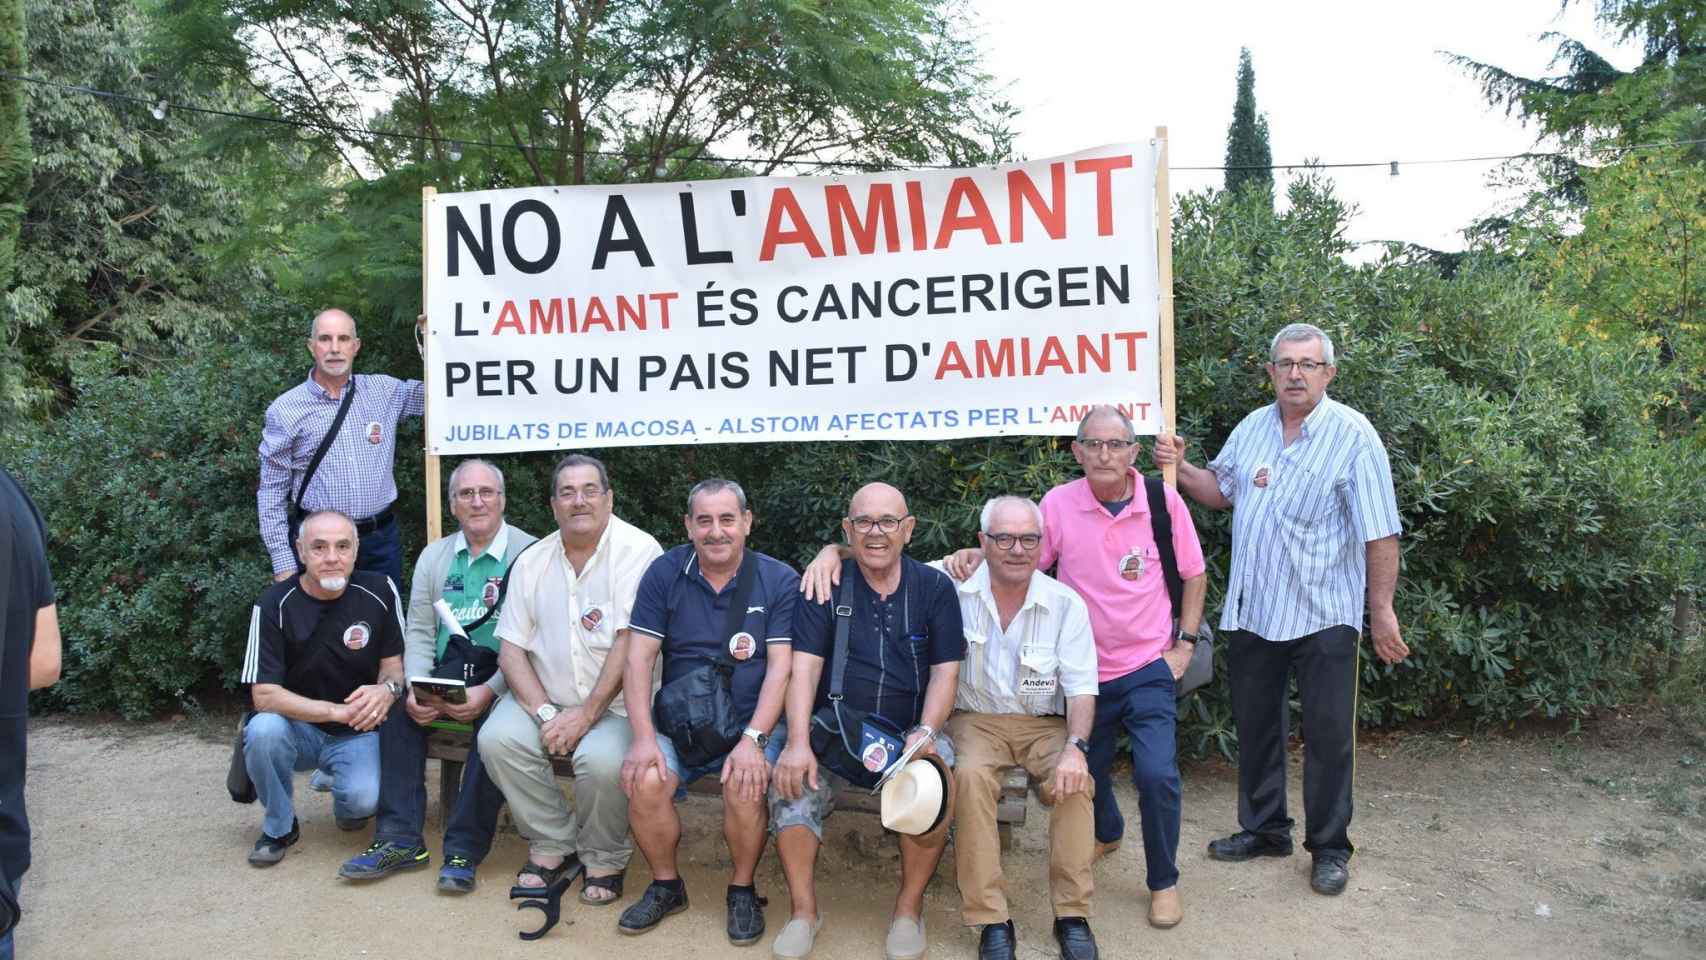 Jubilados de Macosa-Alstom con una pancarta de protesta contra el amianto / JORDI MARROT